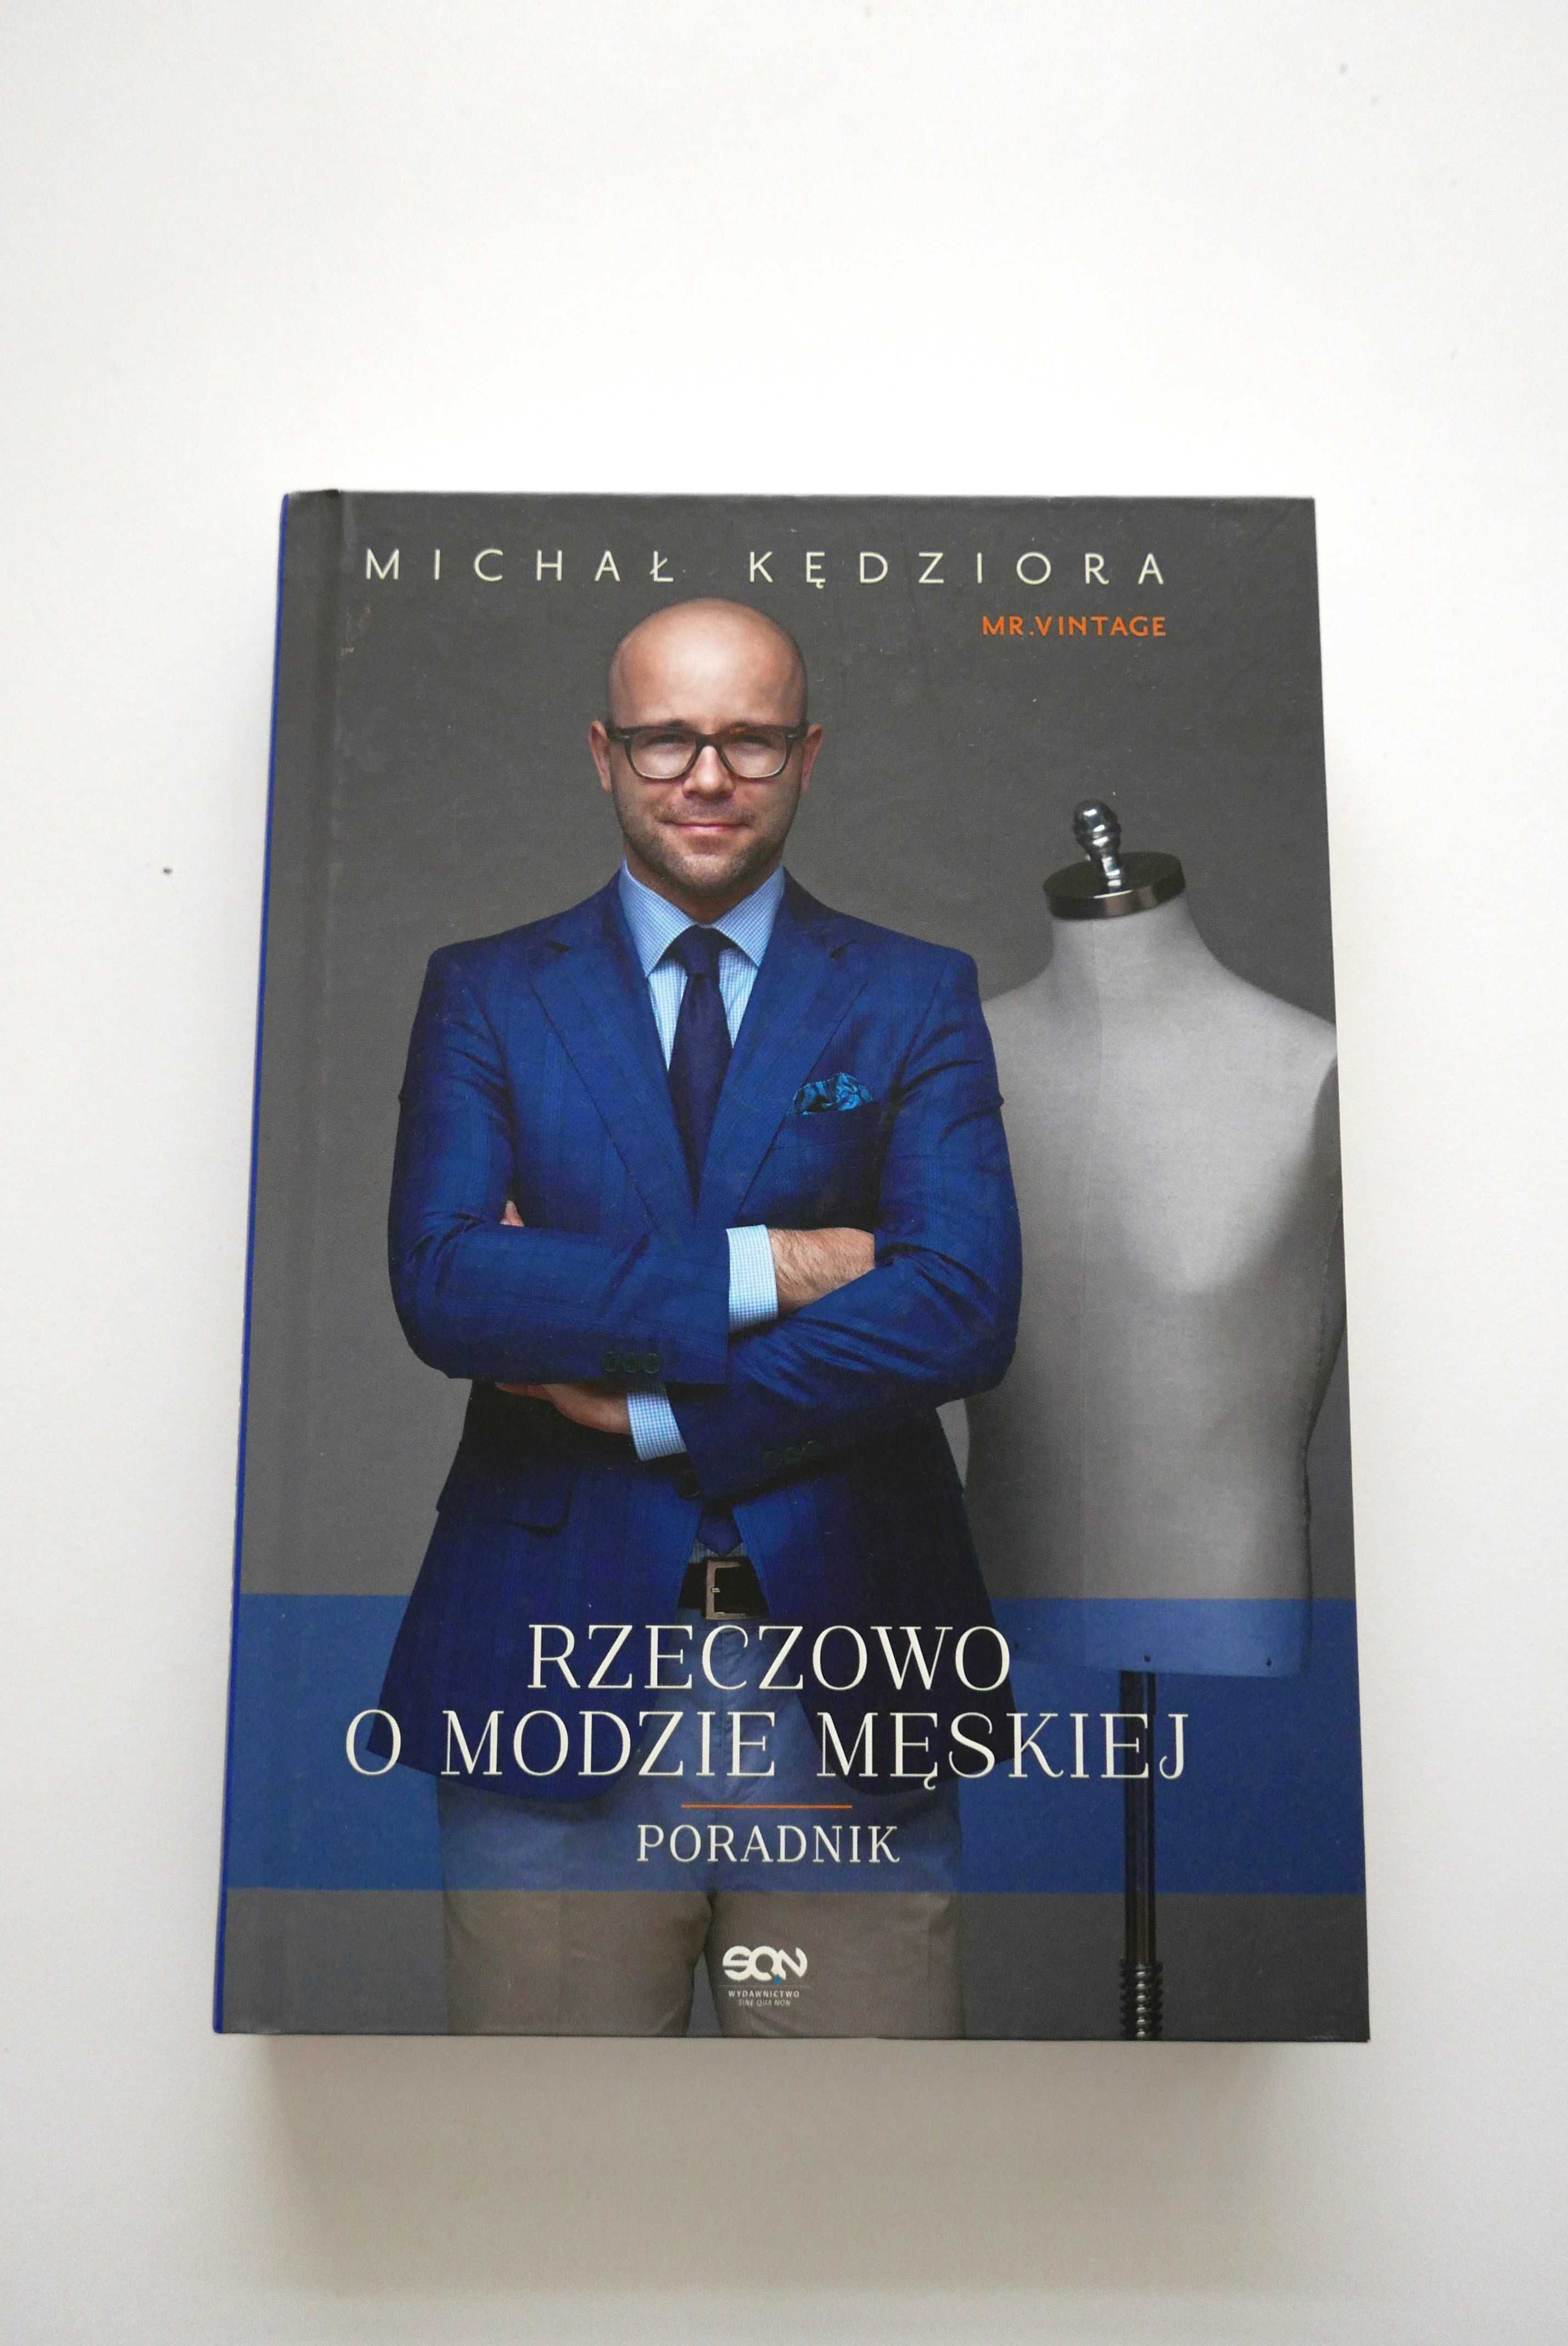 Rzeczowo o modzie męskiej Michał Kędziora Mr. Vintage twarda okładka